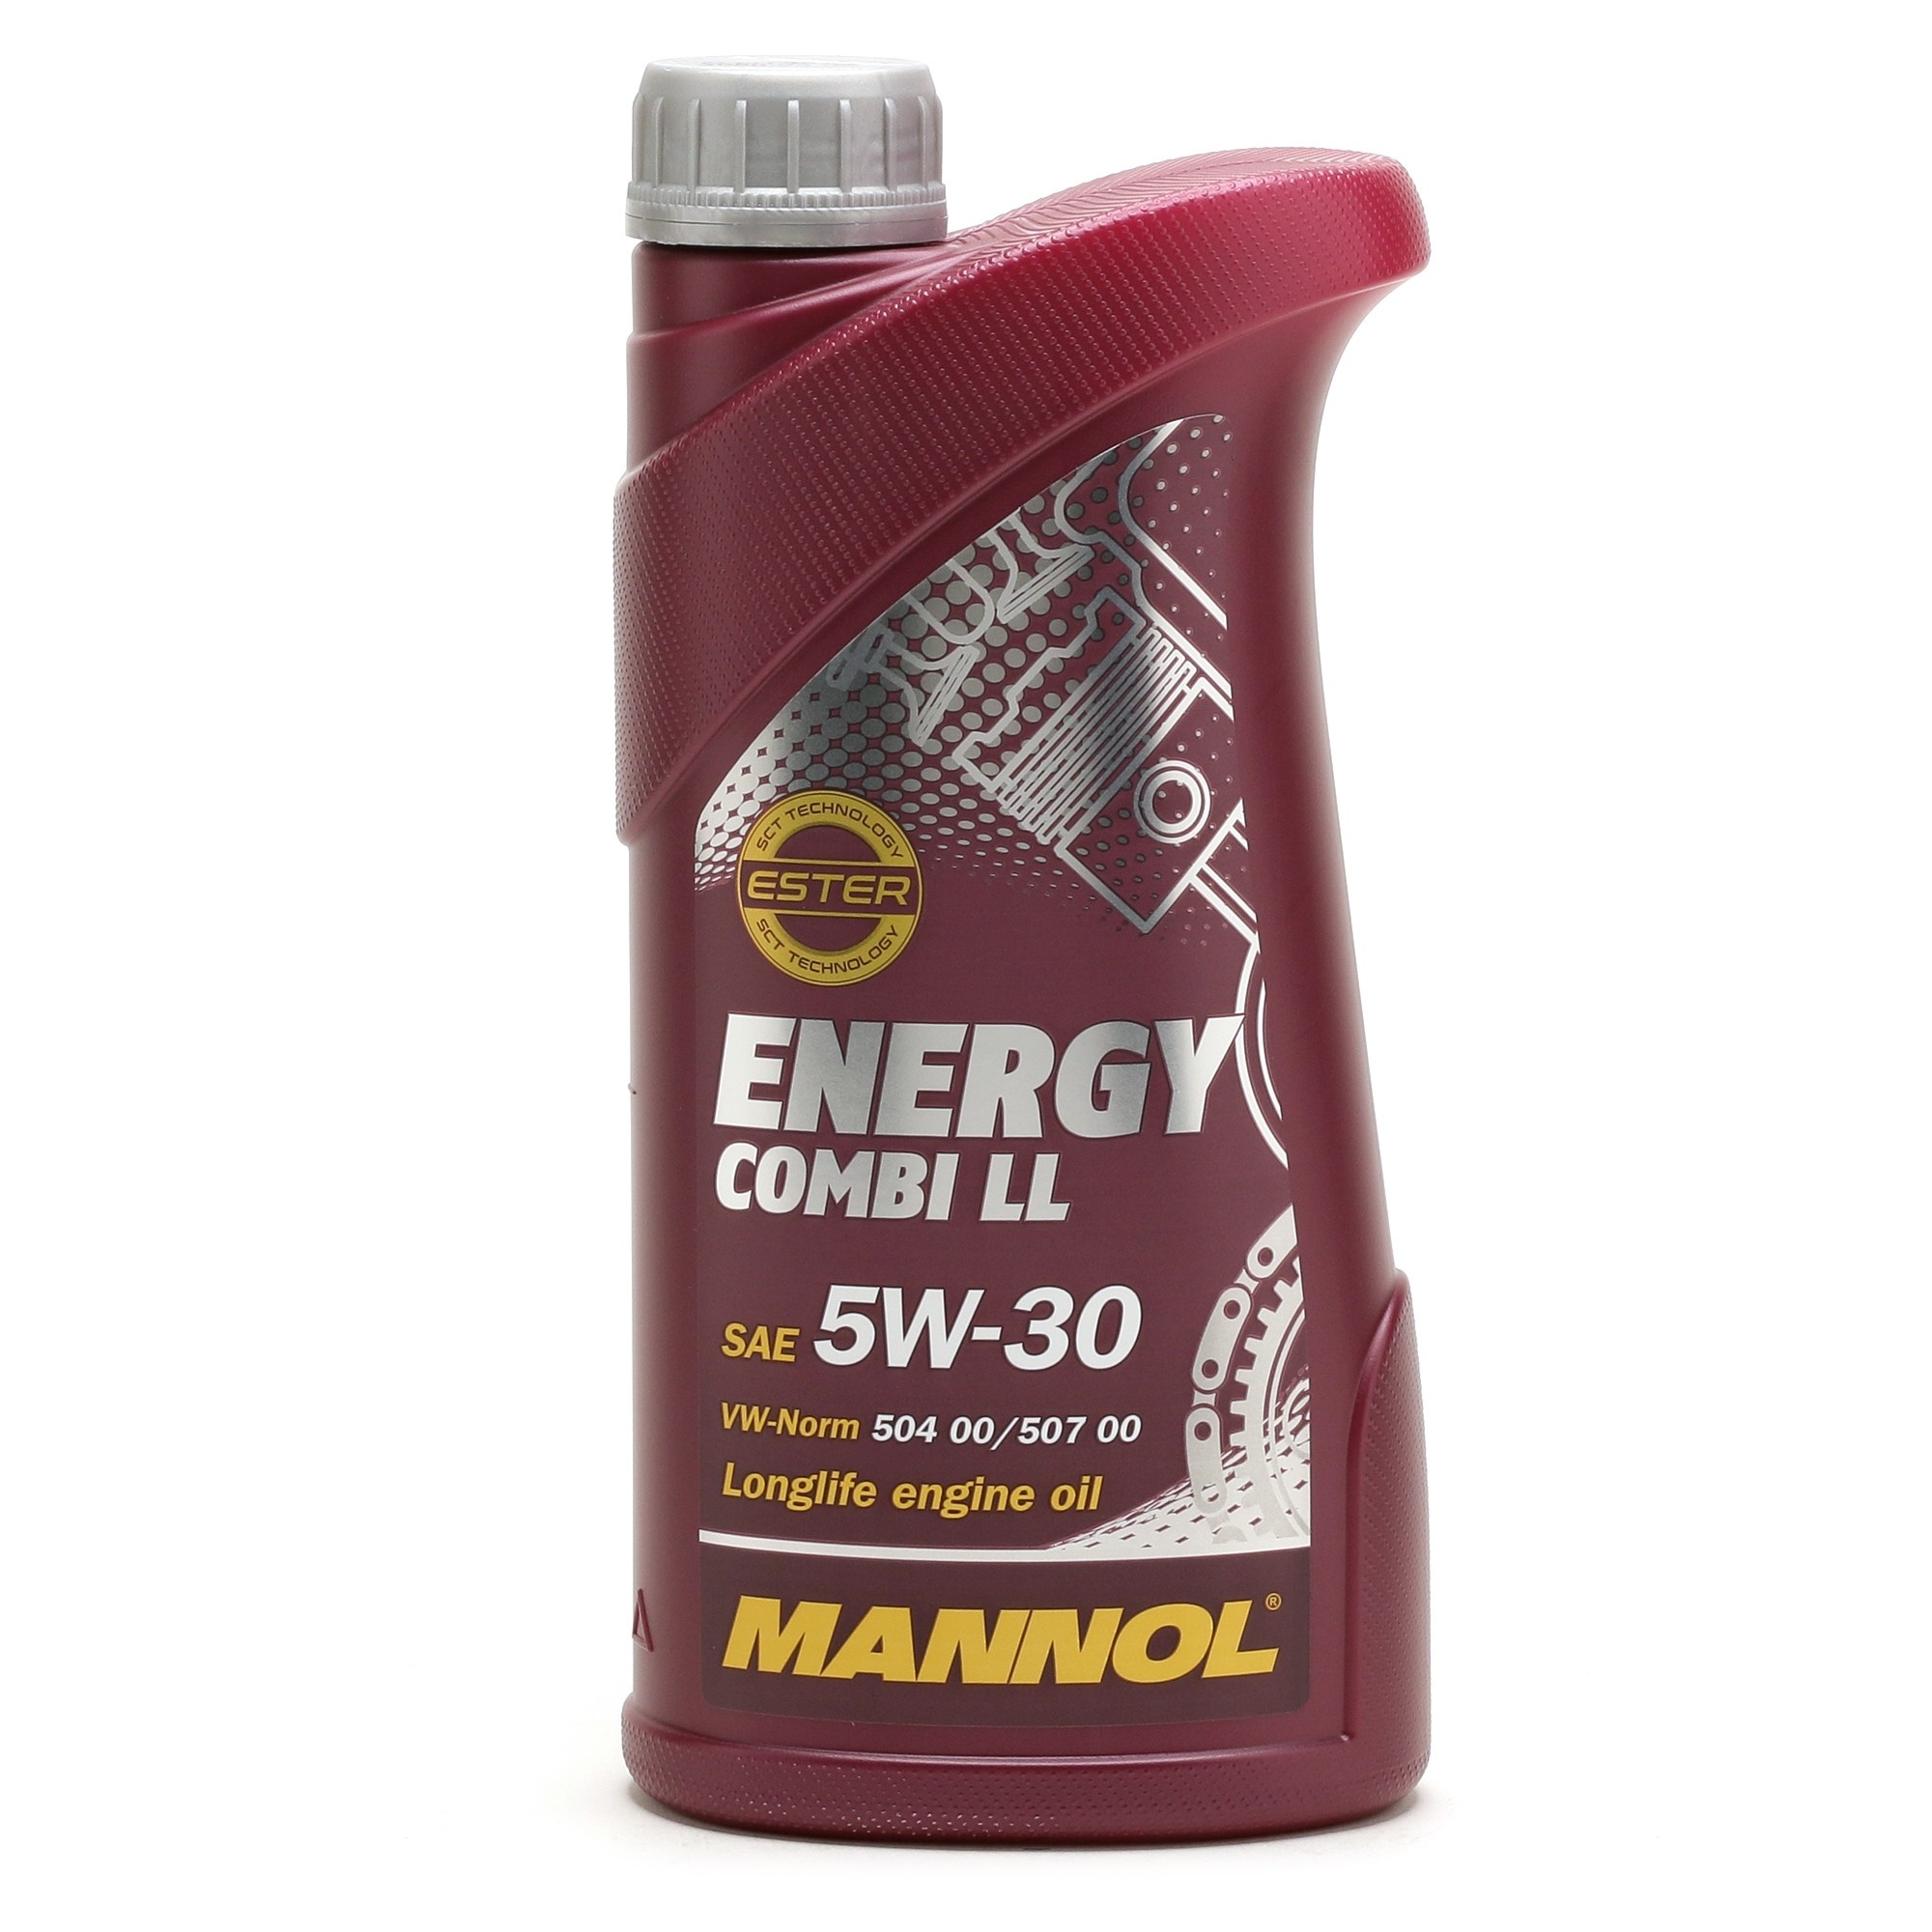 mannol energy combi ll 5w-30 7907